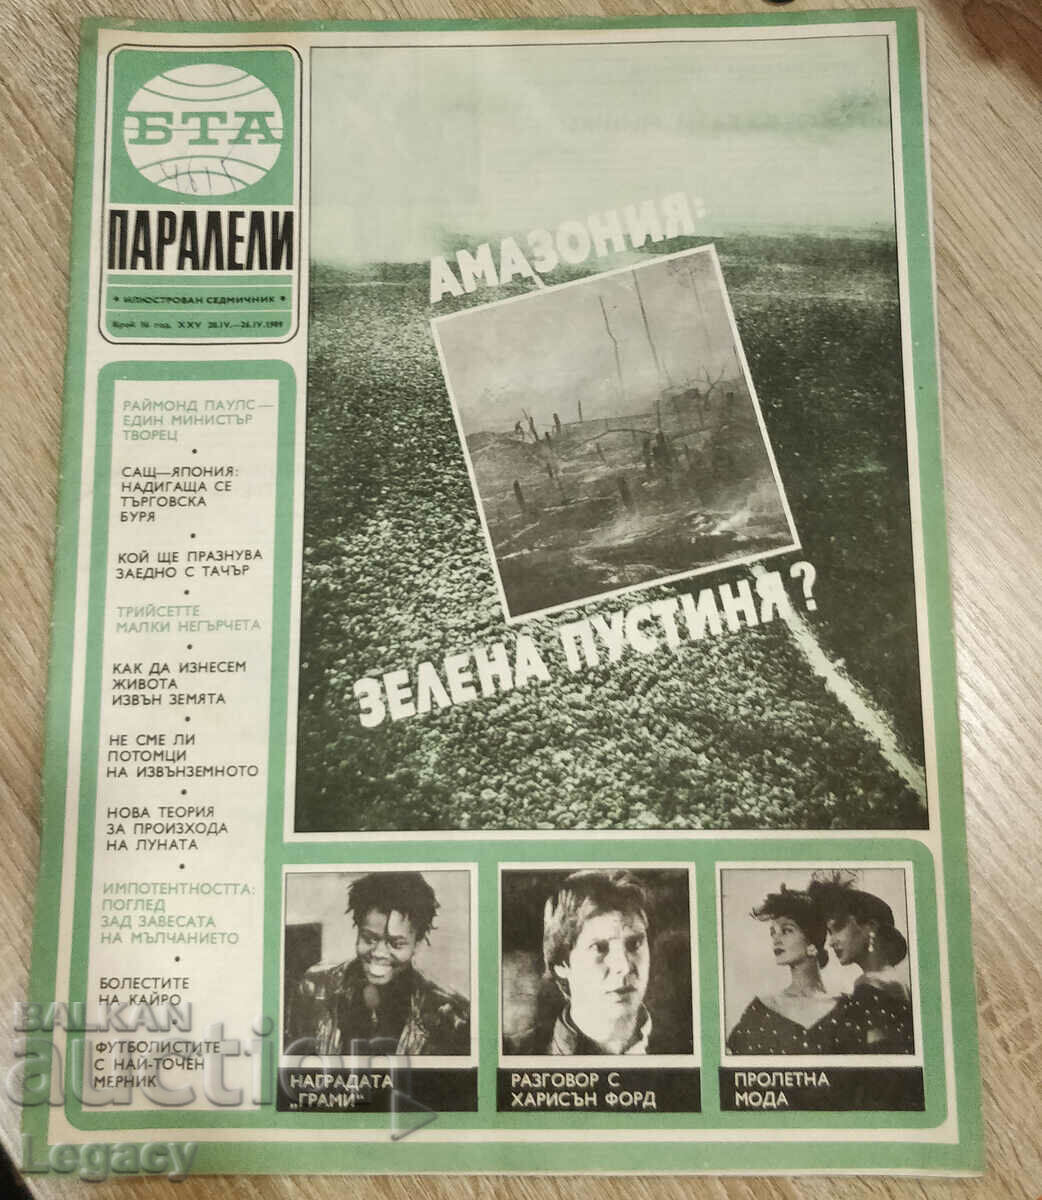 1989 BTA Parallels magazine, issue 16